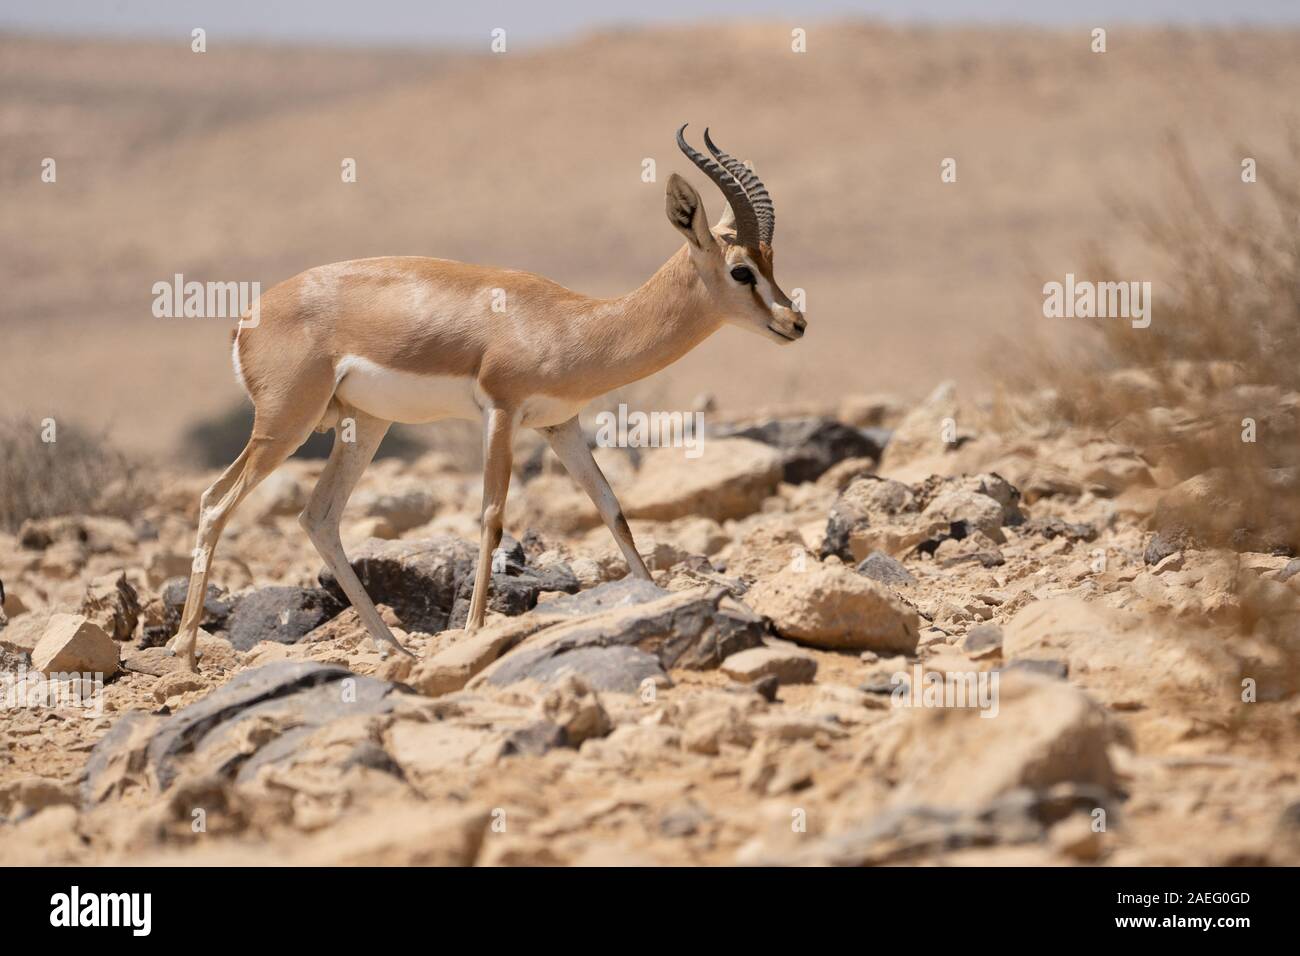 Die Dorcas Gazelle (Gazella dorcas), auch Ariel gazelle genannt, ist eine kleine, gemeinsame Gazelle. Die Dorcas Gazelle ist etwa 55 - 65 cm Am s Stockfoto